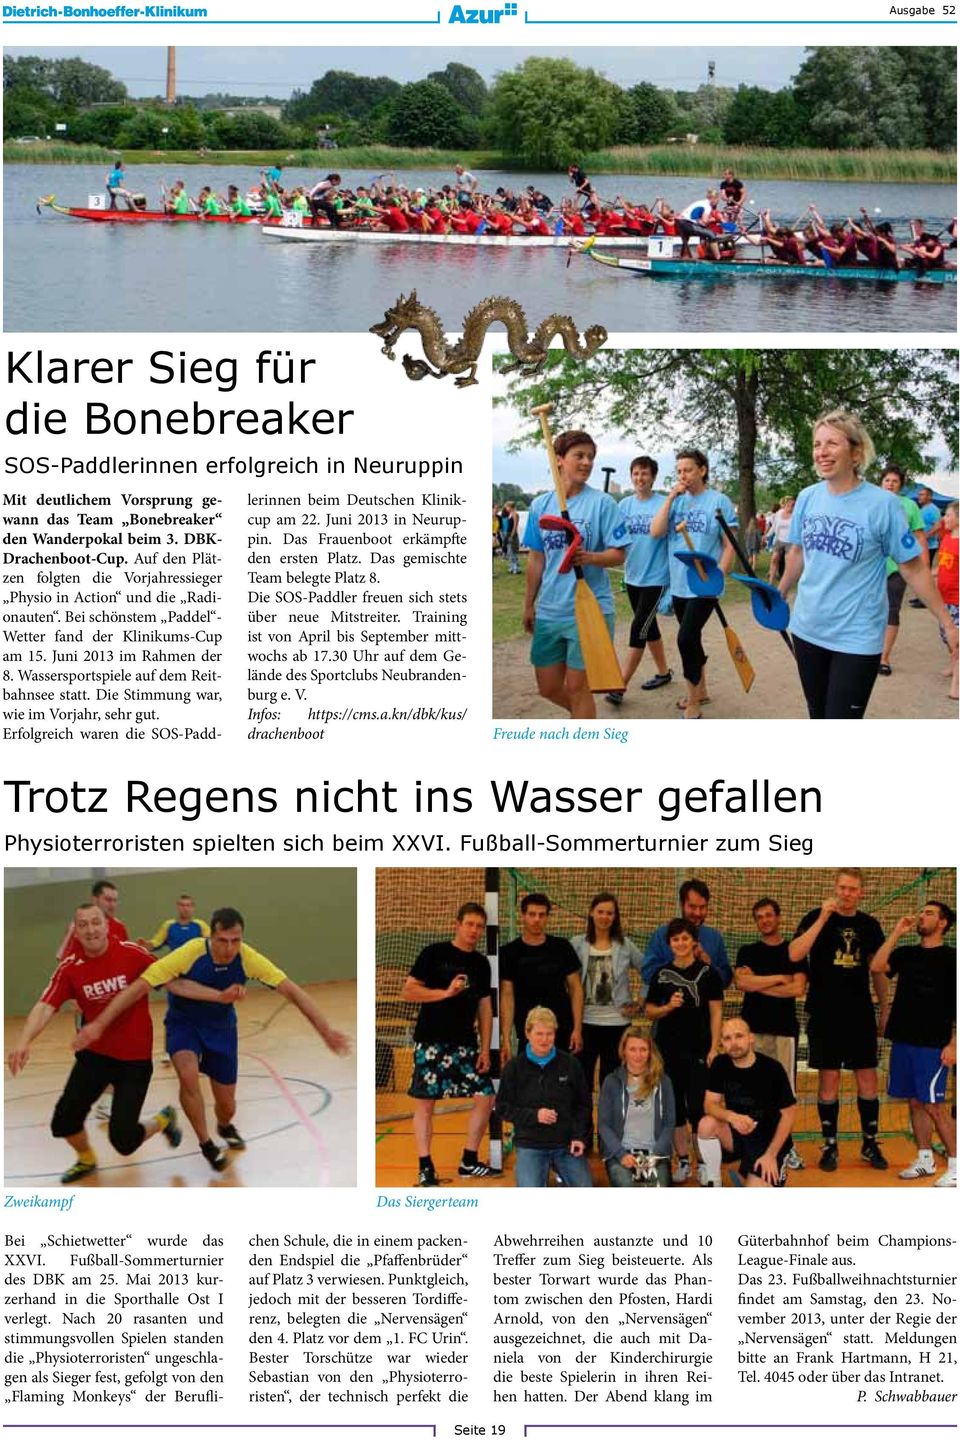 Wassersportspiele auf dem Reitbahnsee statt. Die Stimmung war, wie im Vorjahr, sehr gut. Erfolgreich waren die SOS-Paddlerinnen beim Deutschen Klinikcup am 22. Juni 2013 in Neuruppin.